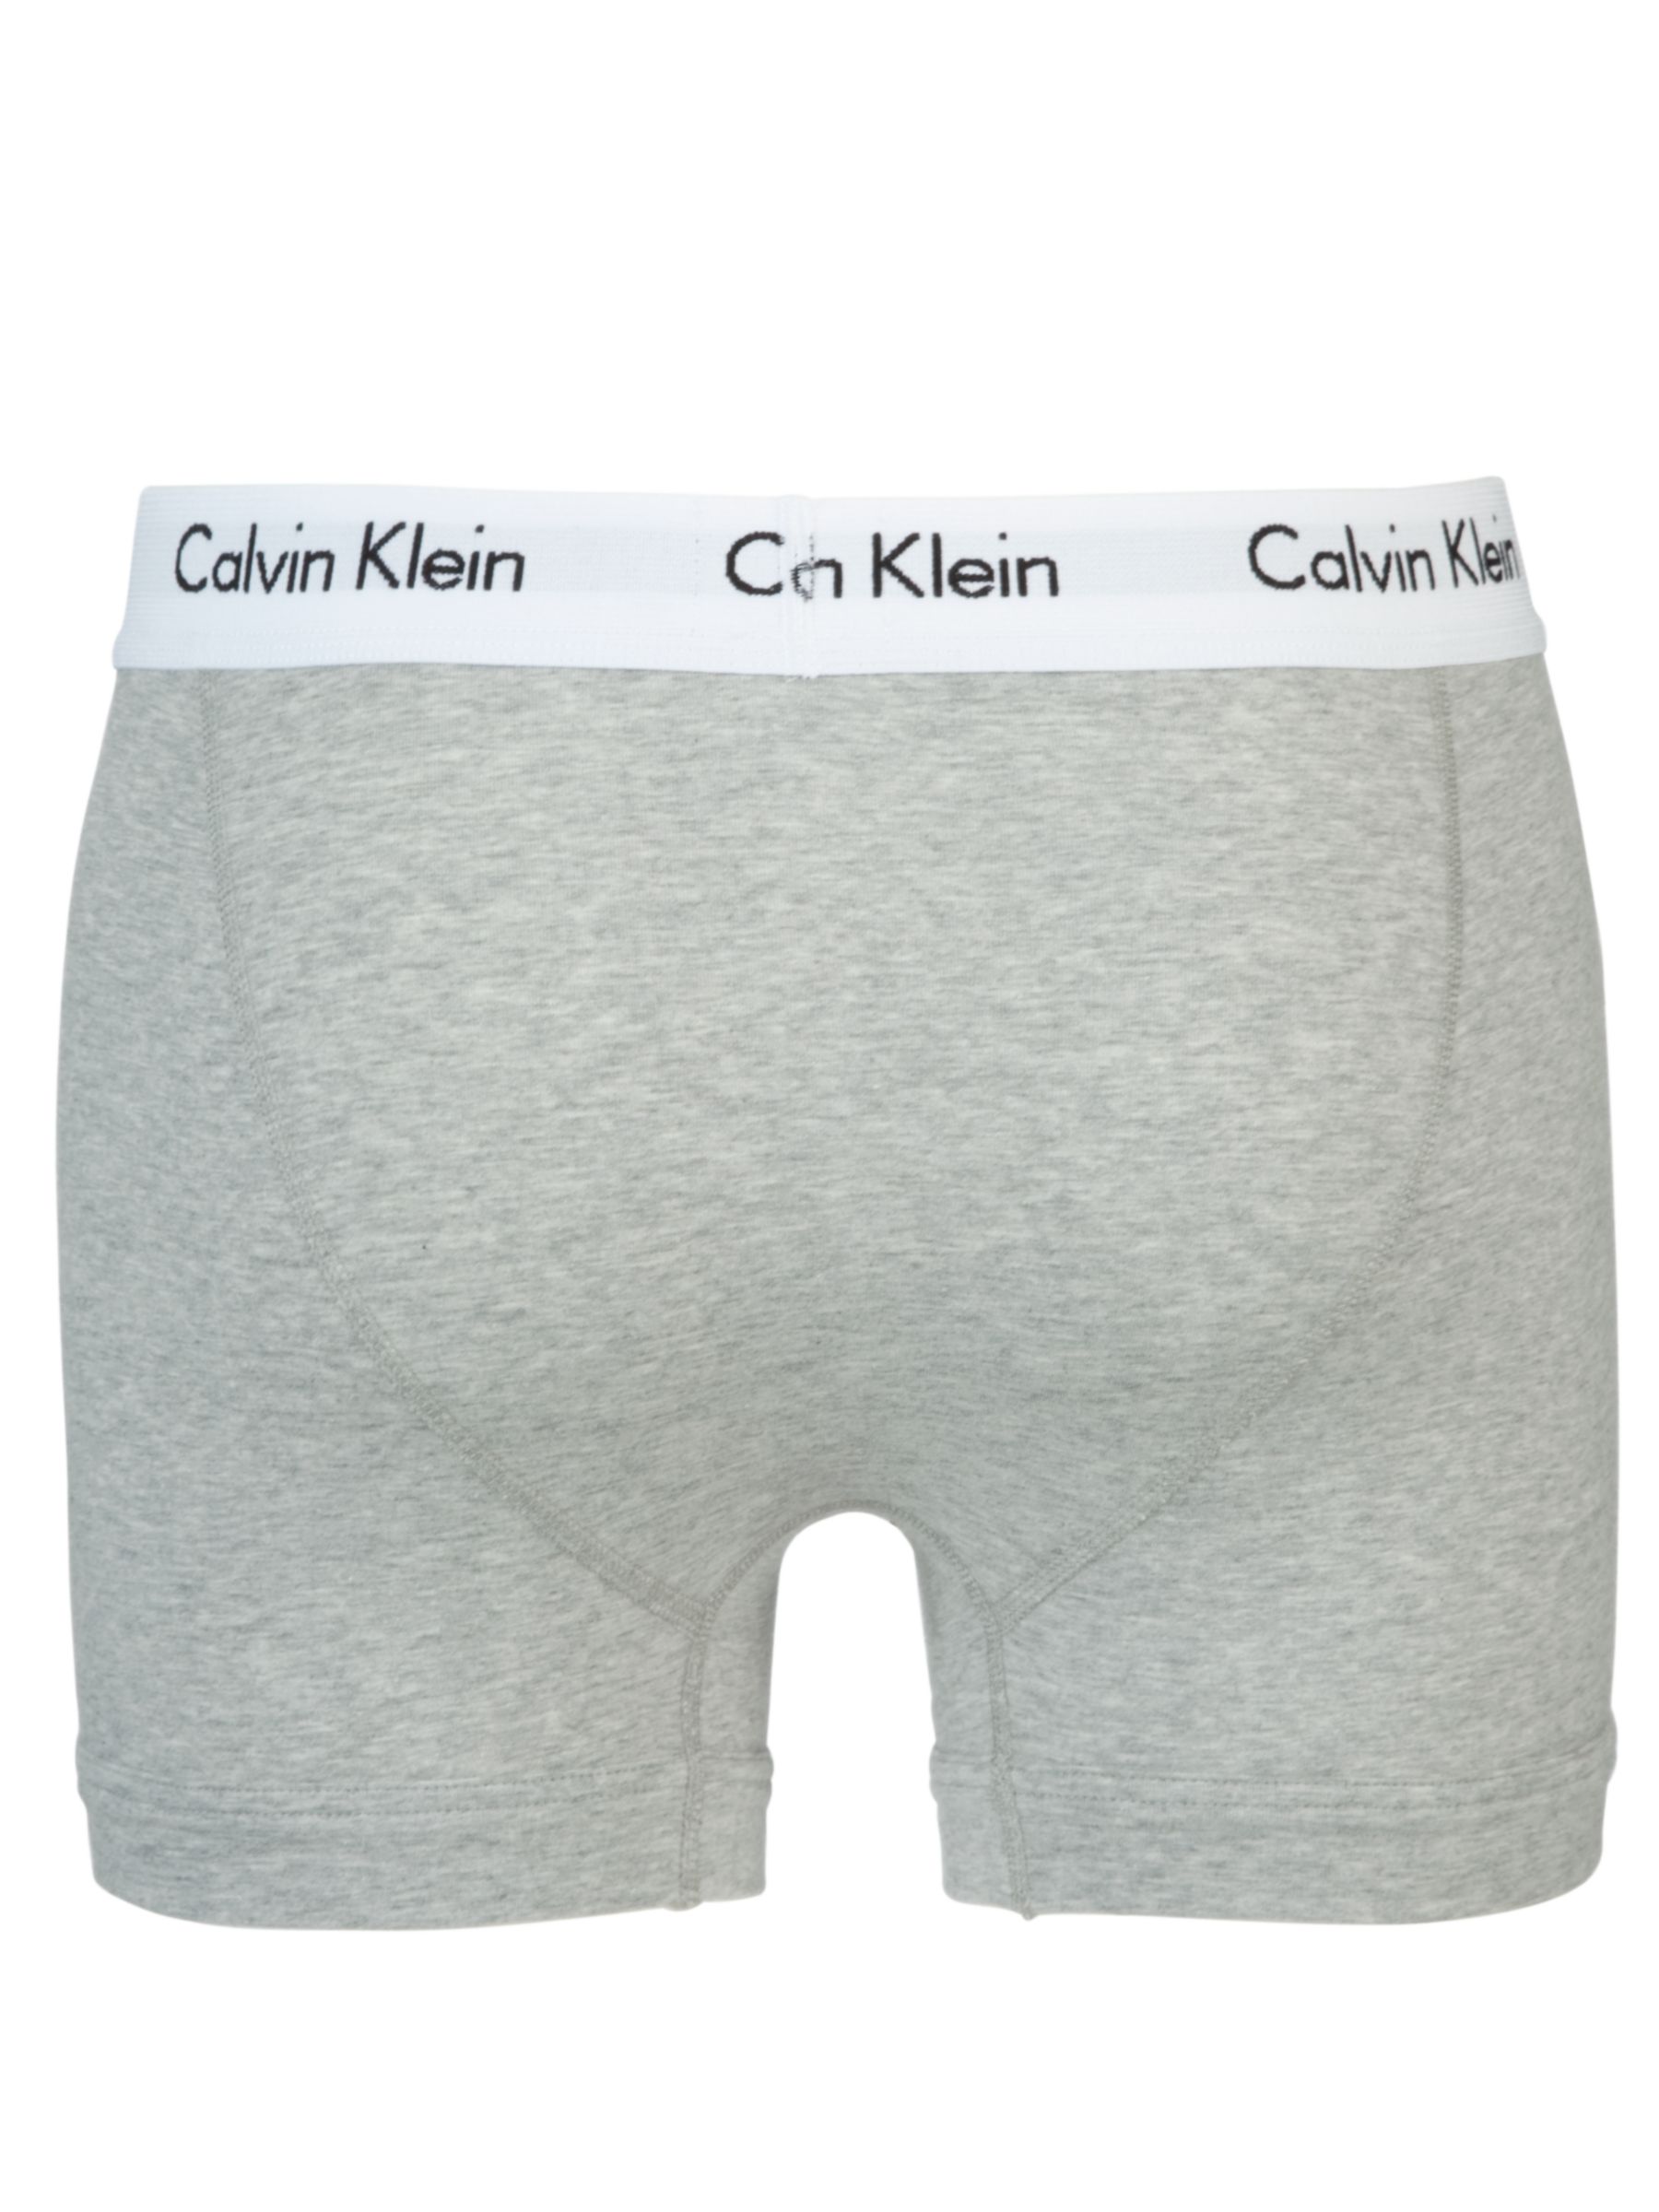 Buy Calvin Klein Underwear Cotton Stretch Trunks, Pack of 3, White/Grey ...